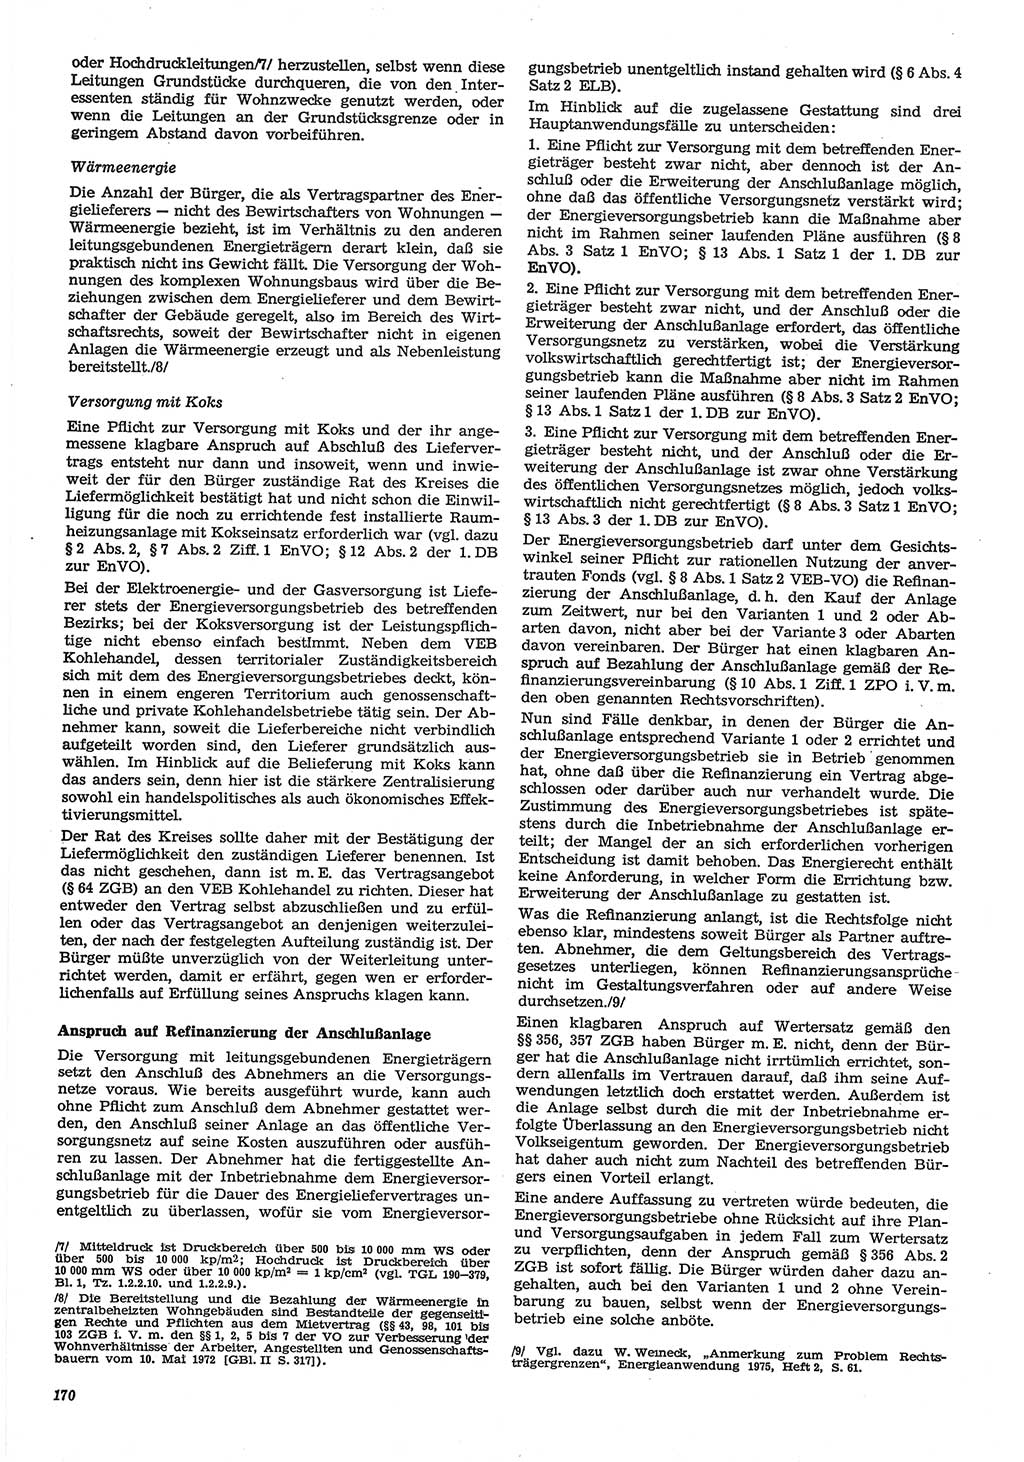 Neue Justiz (NJ), Zeitschrift für Recht und Rechtswissenschaft-Zeitschrift, sozialistisches Recht und Gesetzlichkeit, 31. Jahrgang 1977, Seite 170 (NJ DDR 1977, S. 170)